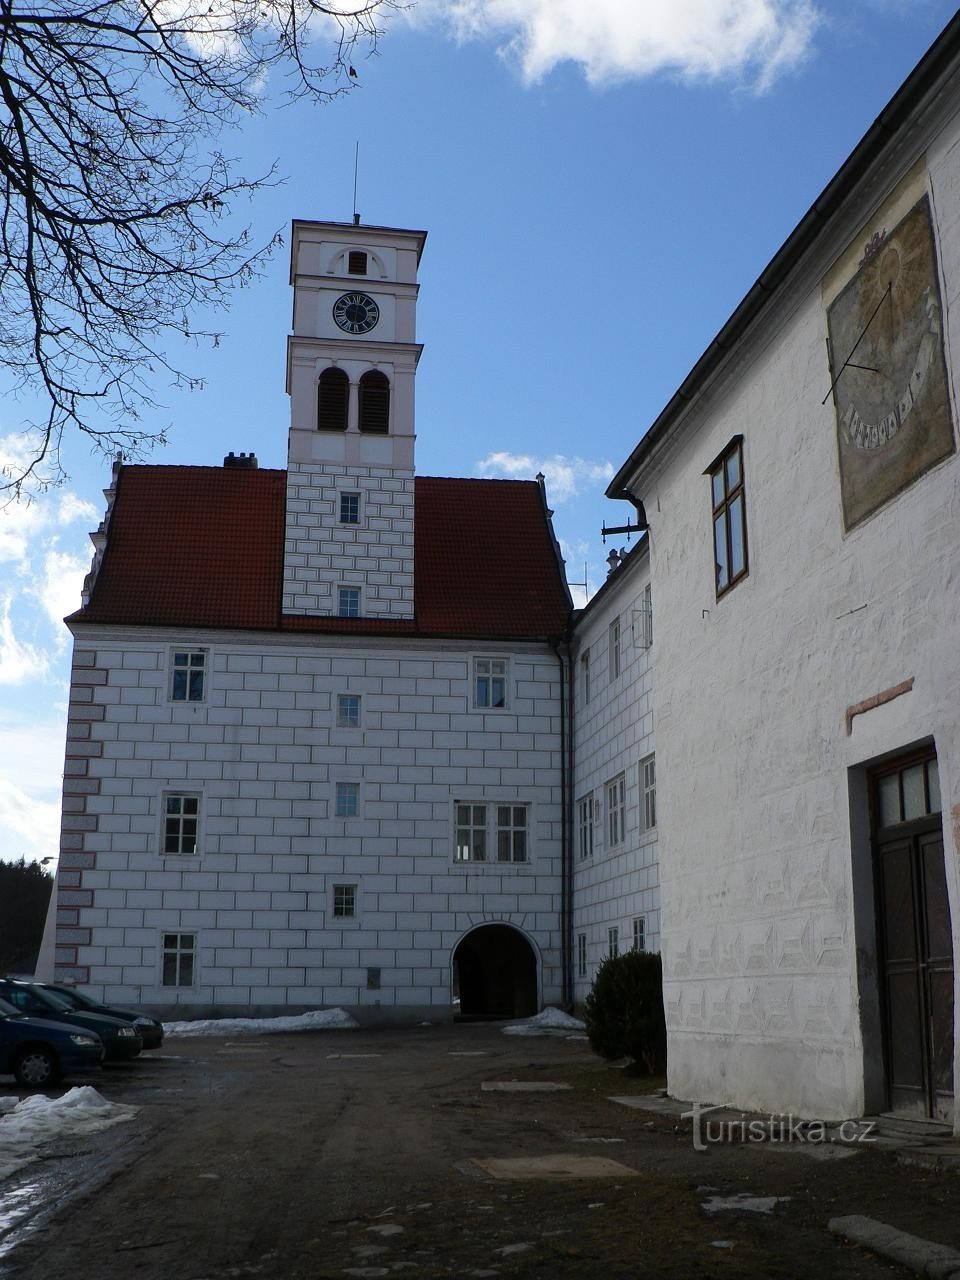 Castelo de Žichovice, edifício com torre